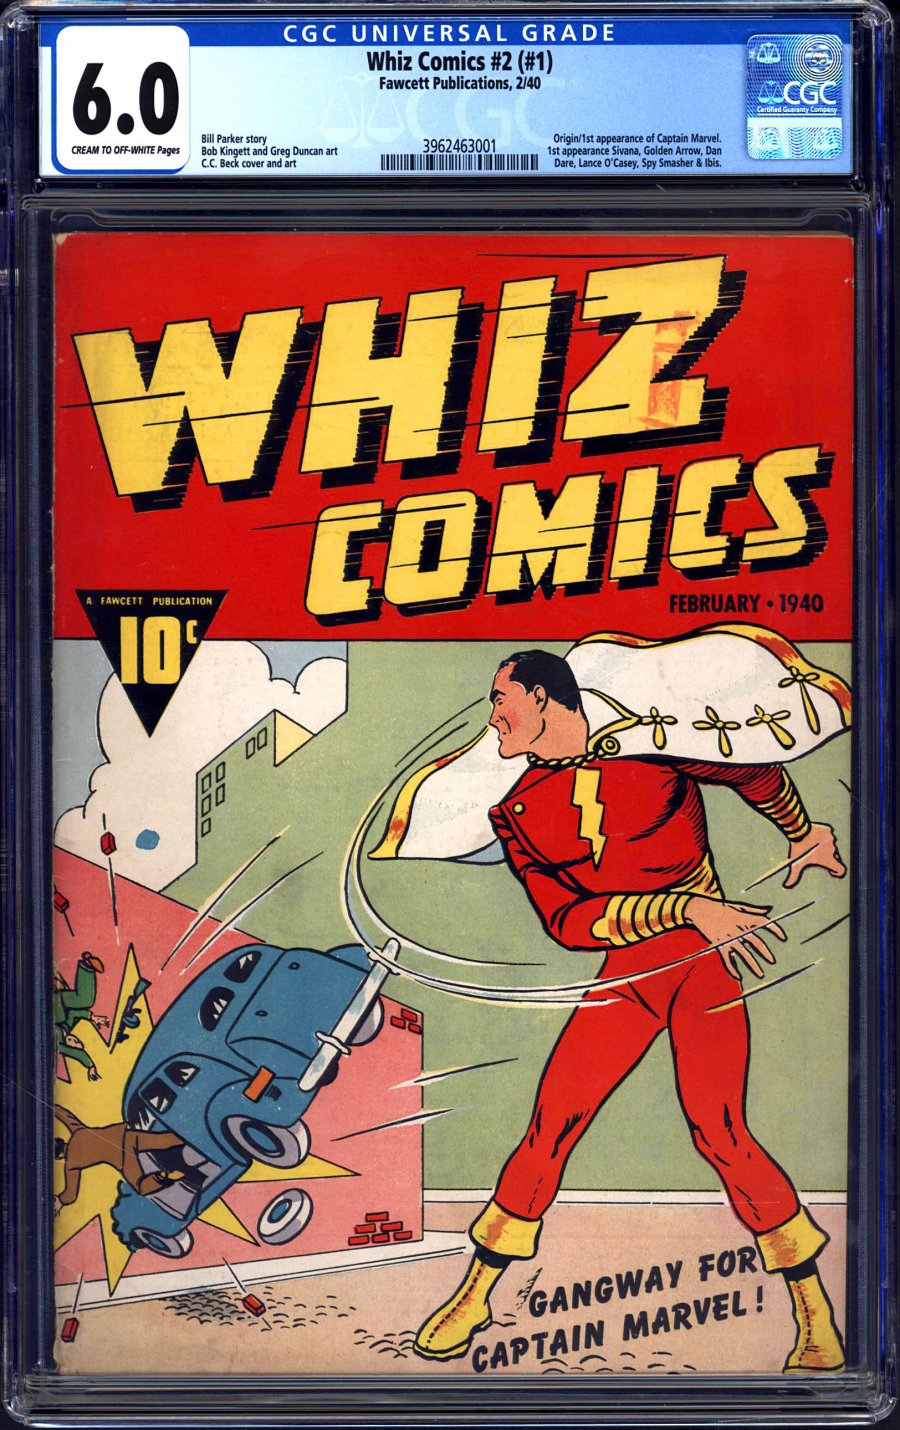 Whiz comics 1